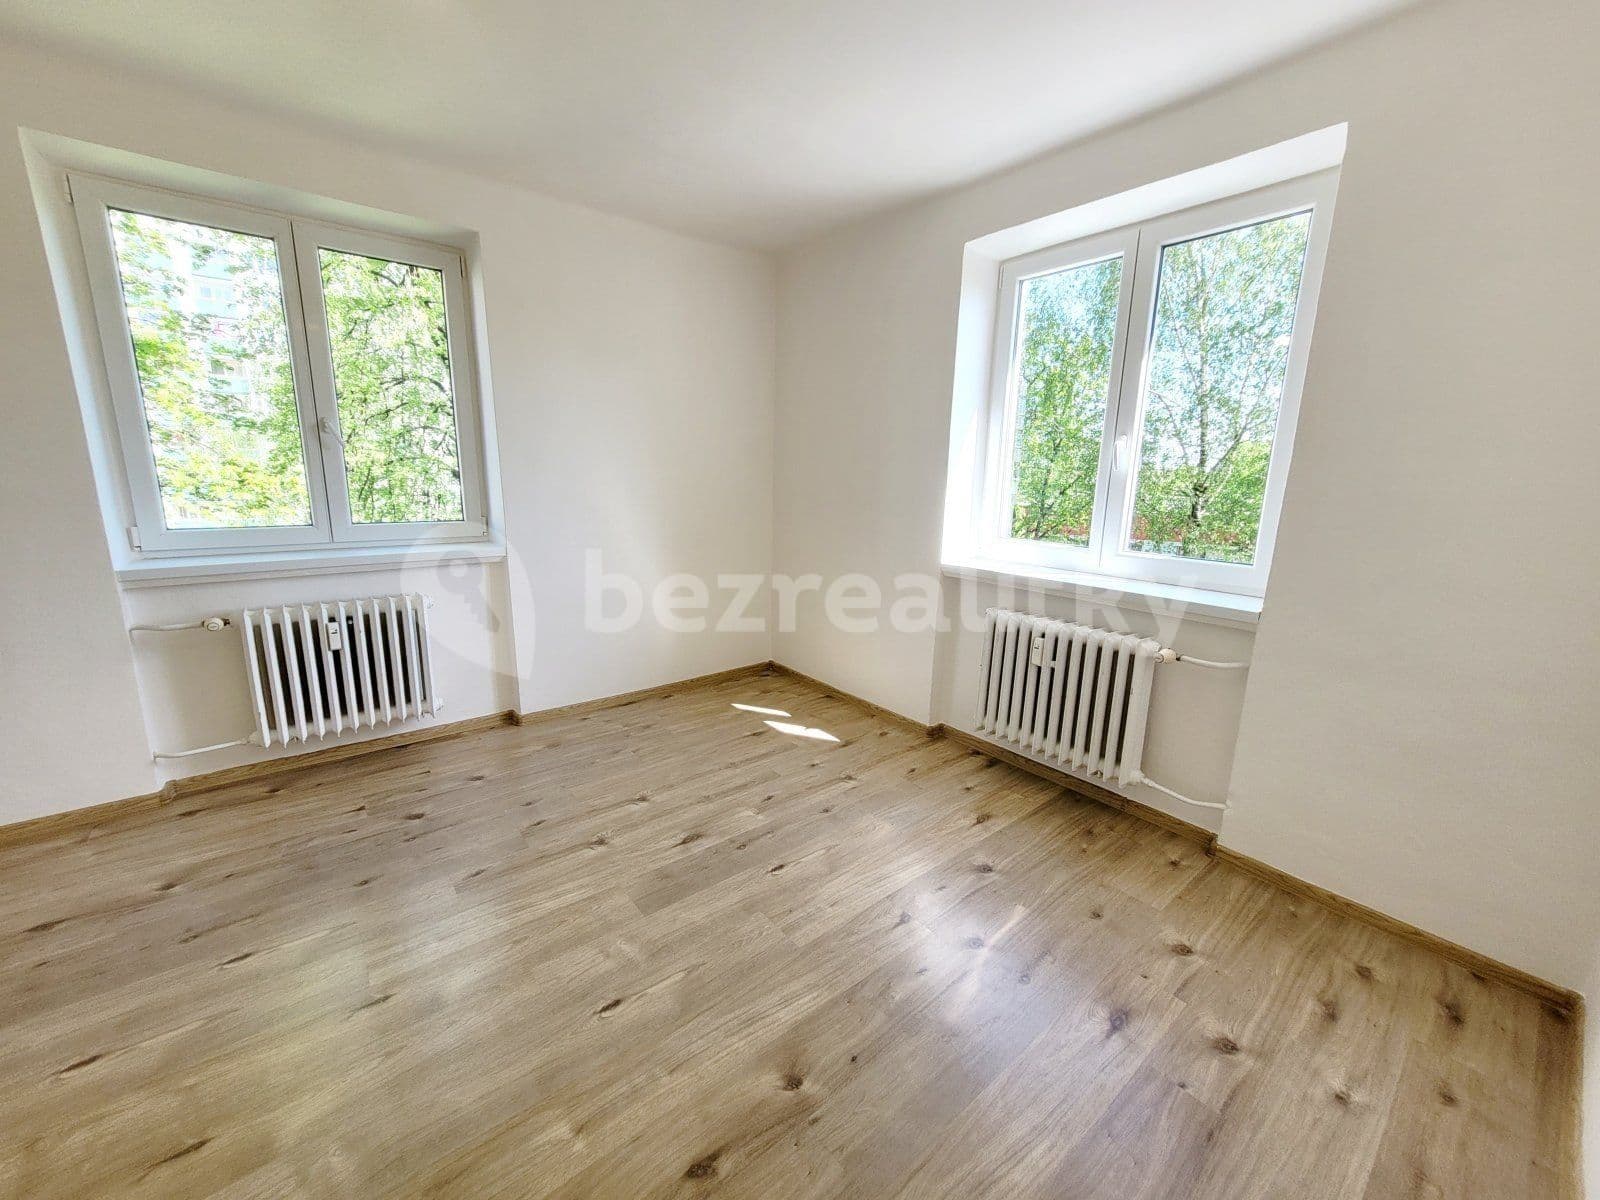 3 bedroom flat to rent, 70 m², Okružní, Havířov, Moravskoslezský Region